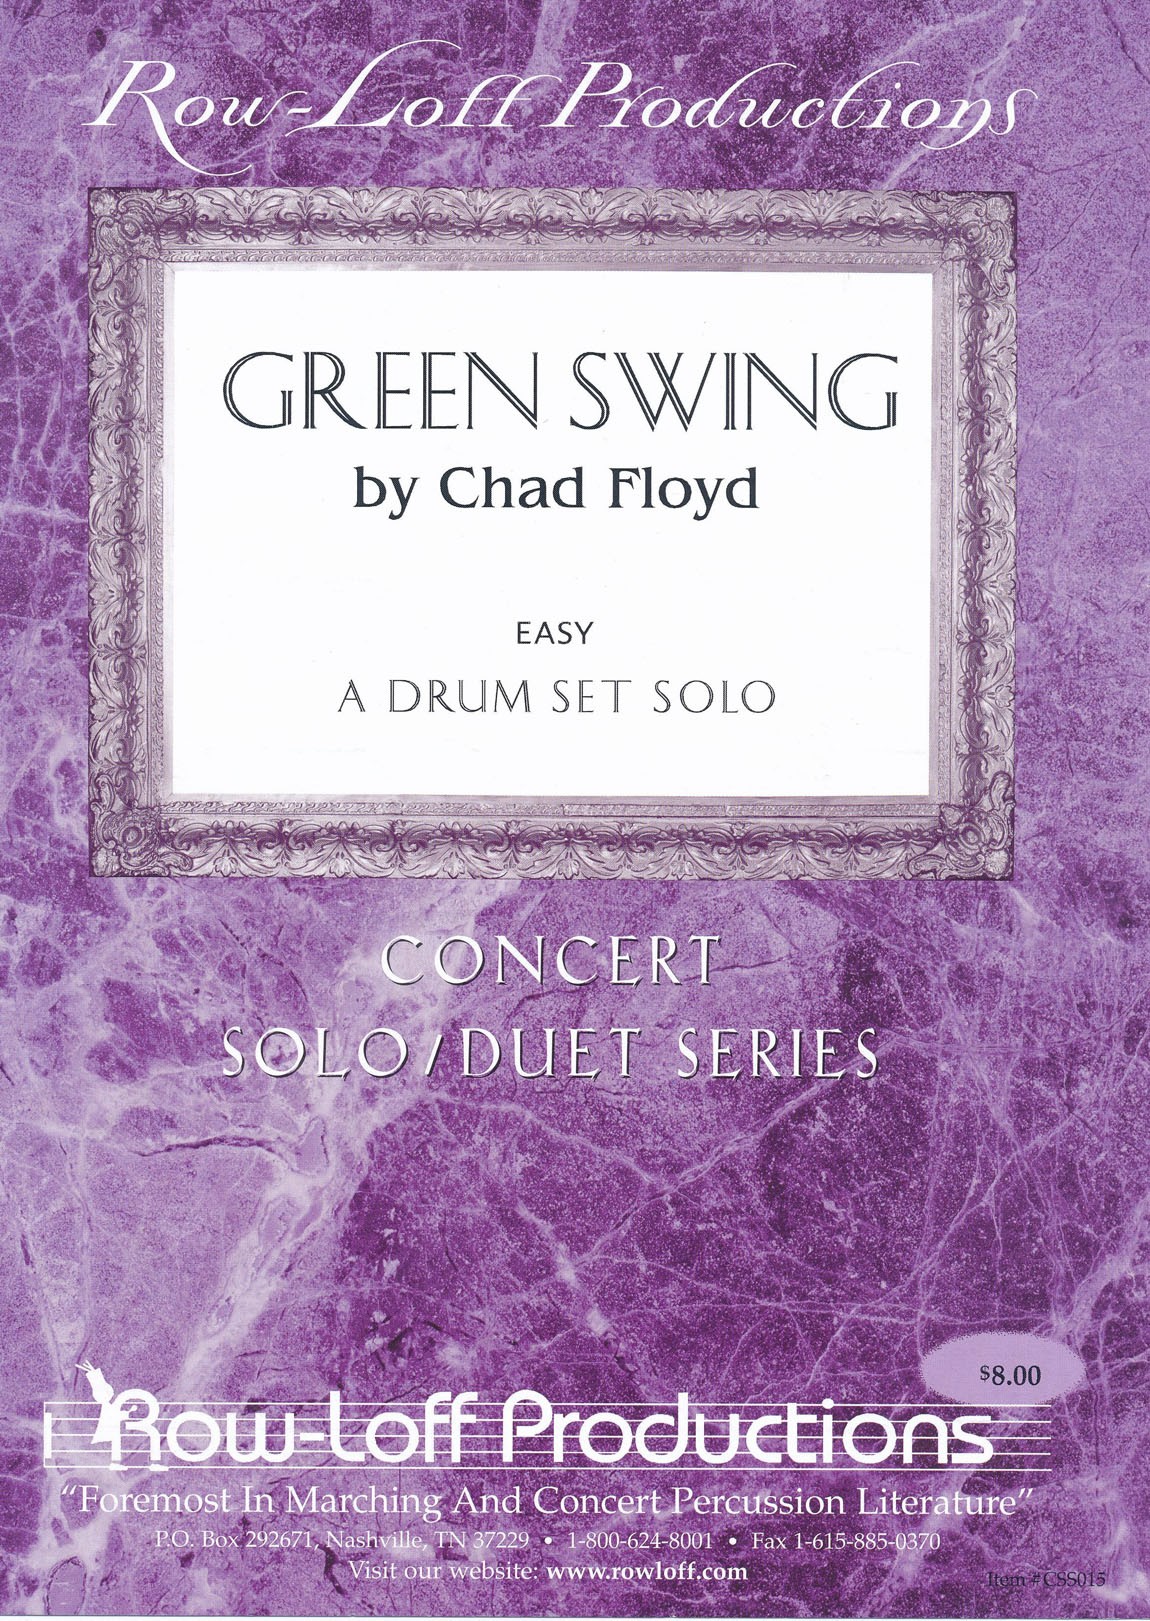 Green Swing by Chad Floyd